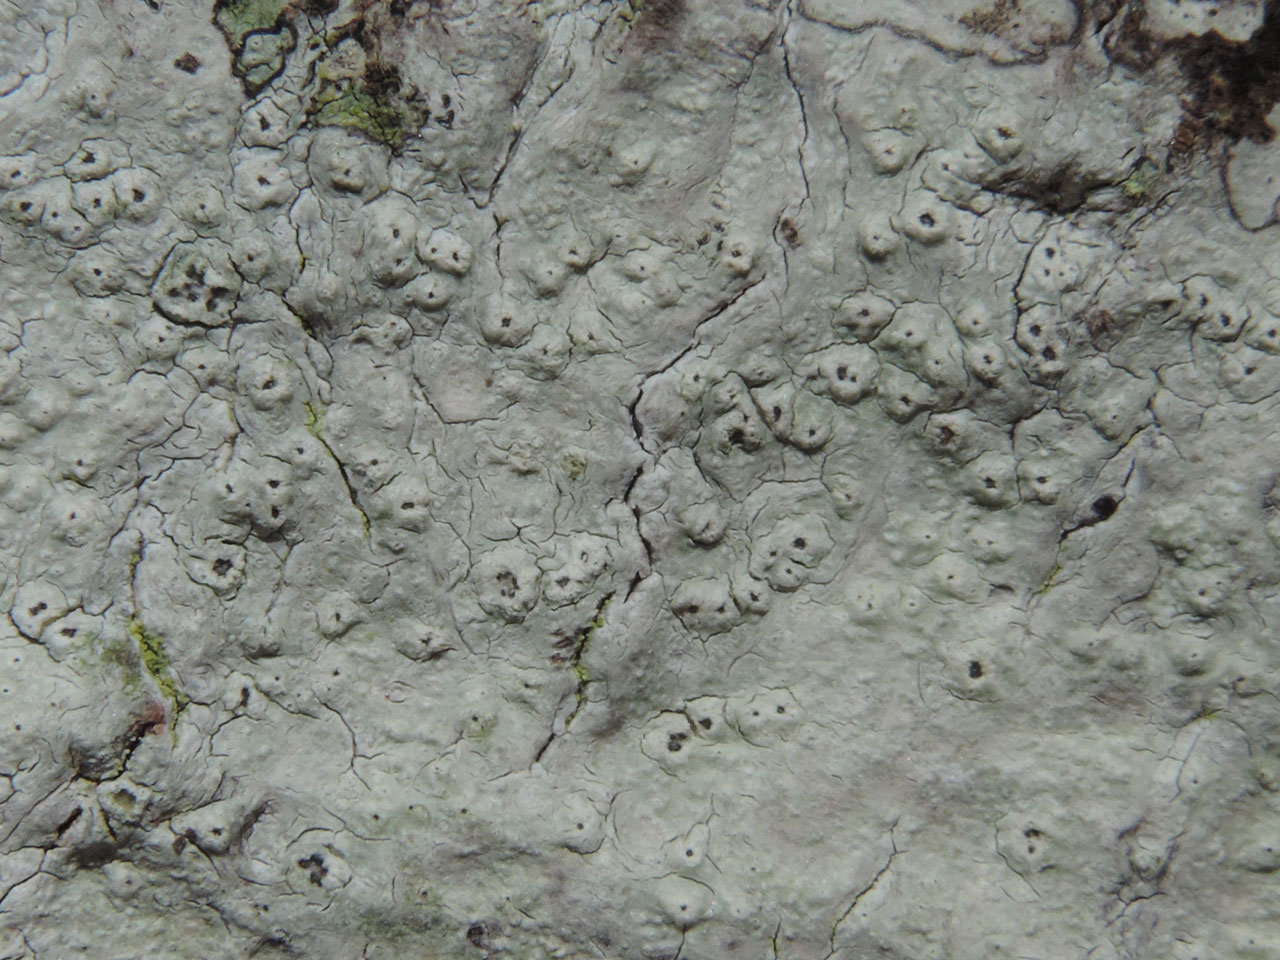 Pertusaria pustulata, apothecia warts, New Forest